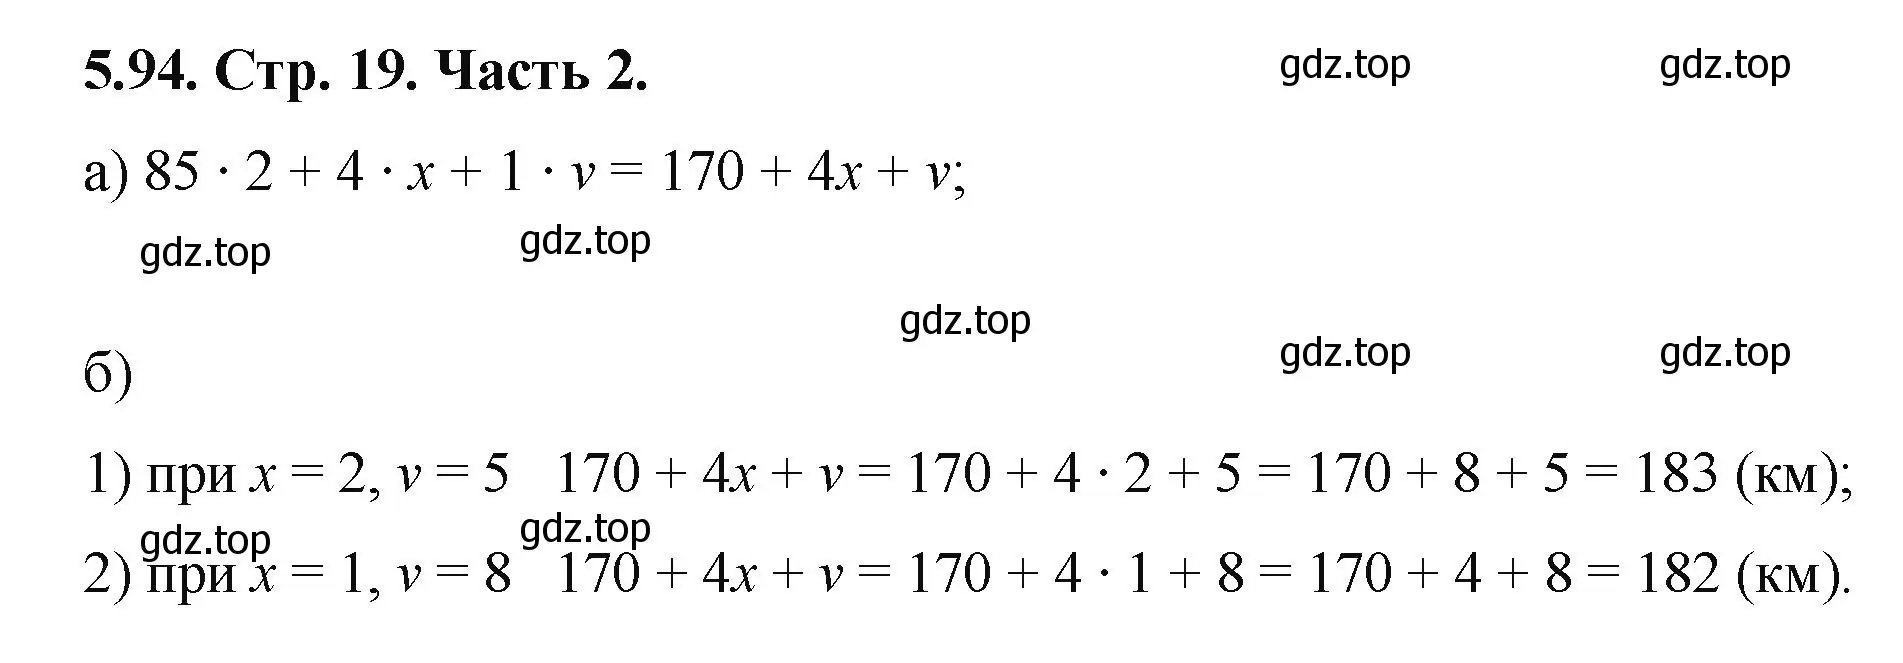 Решение номер 5.94 (страница 19) гдз по математике 5 класс Виленкин, Жохов, учебник 2 часть